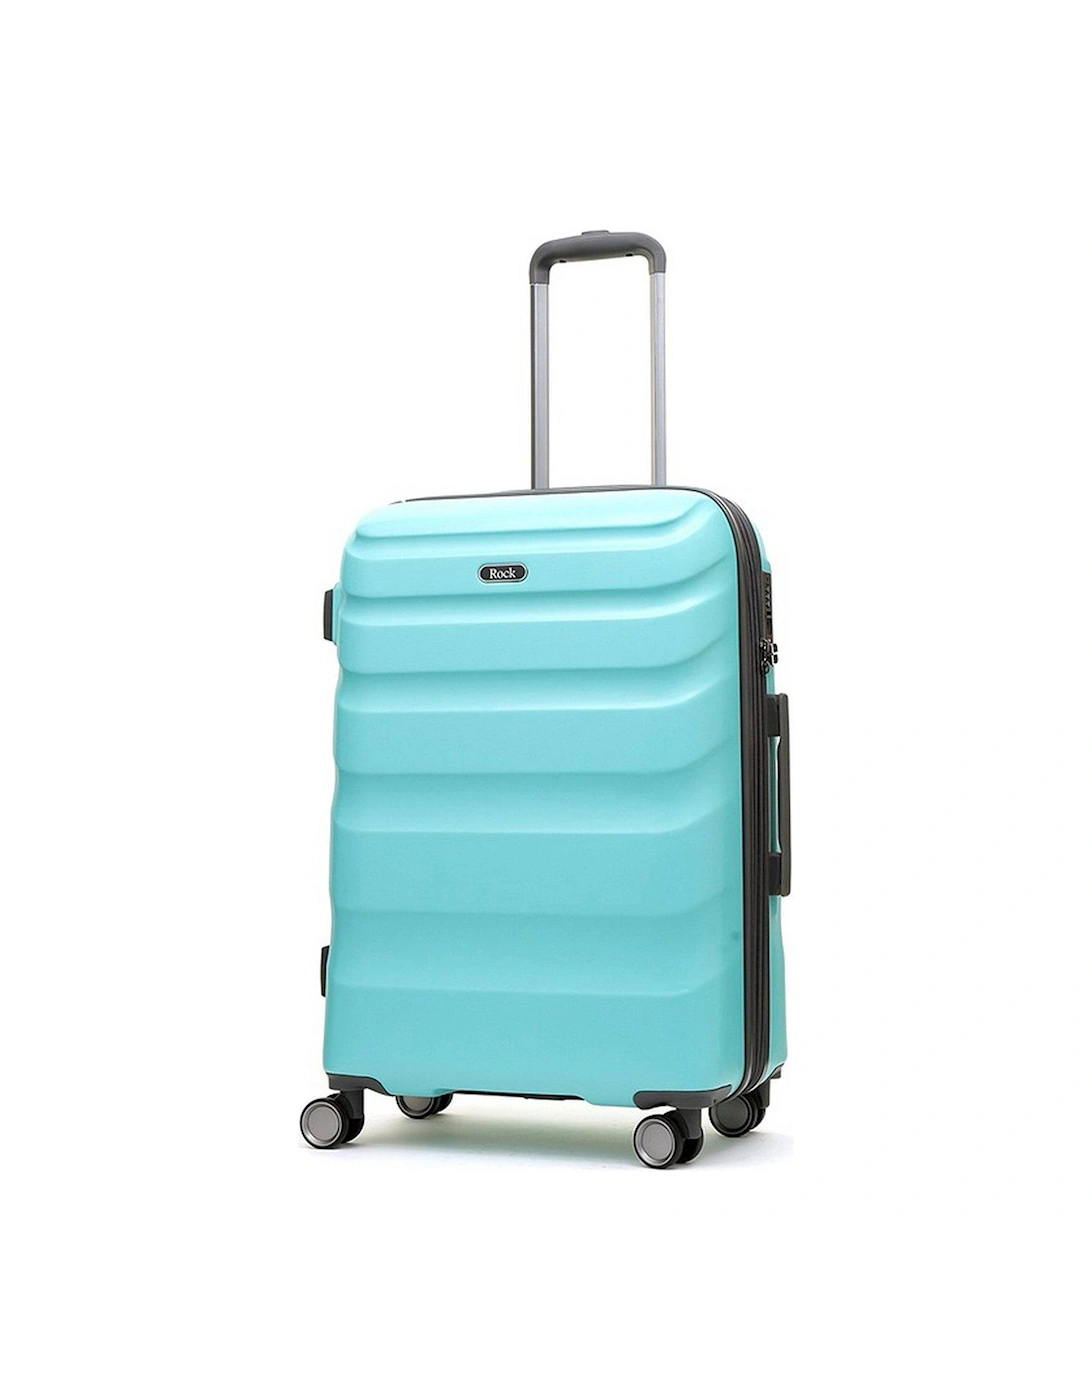 Bali 8 Wheel Hardshell Medium Suitcase - Turquoise, 2 of 1